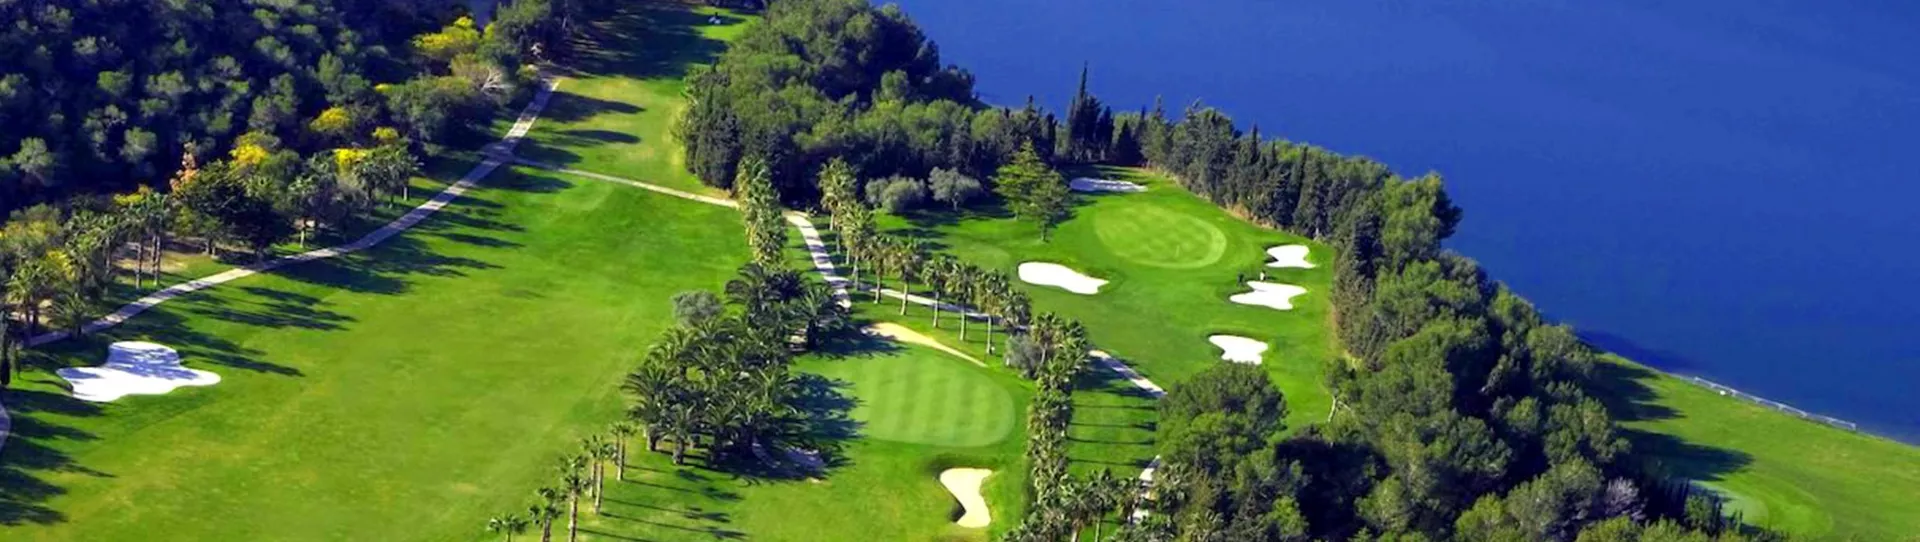 Spain golf courses - Campoamor Golf Course - Photo 2